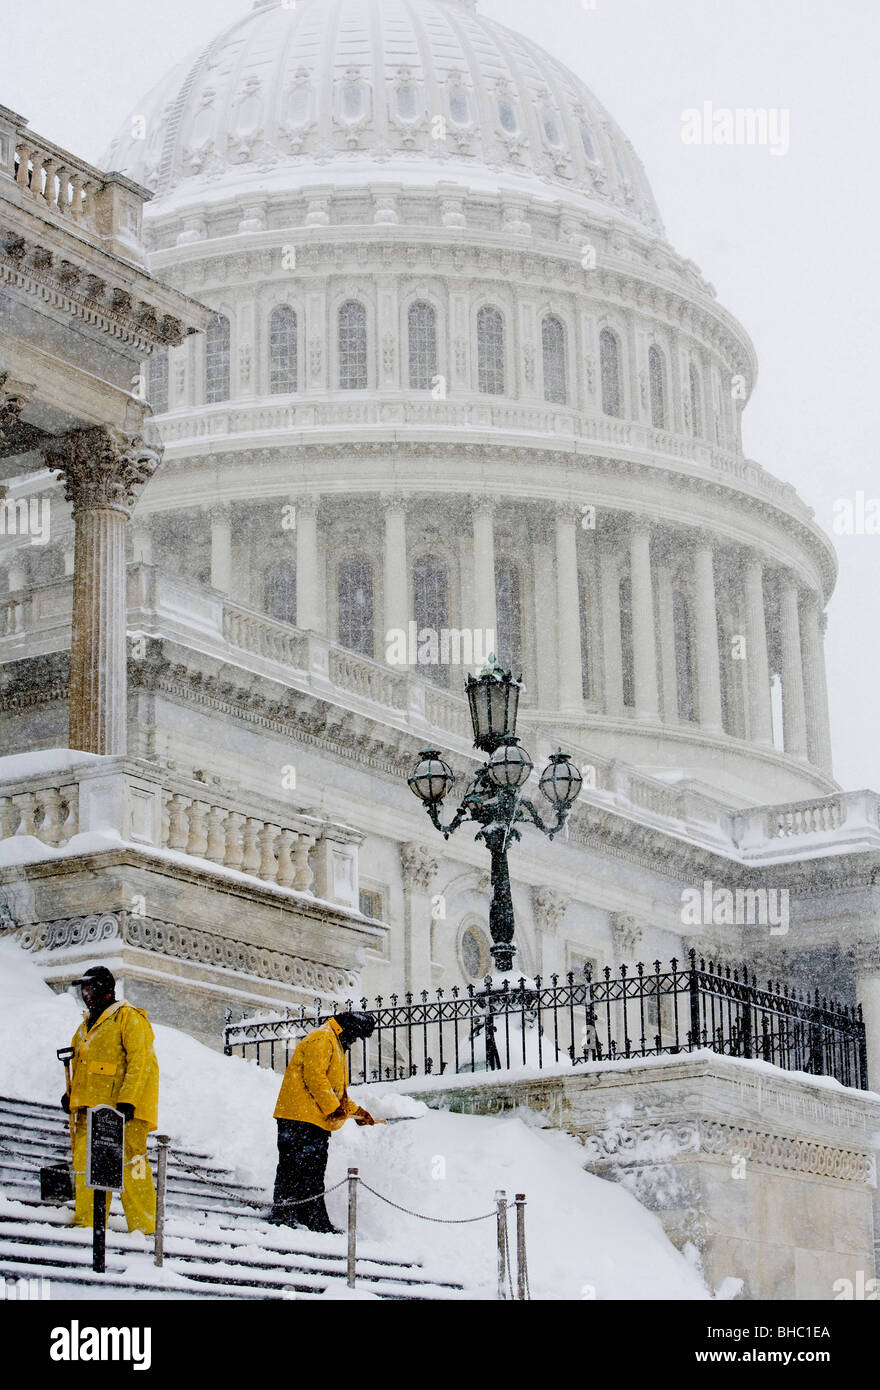 Aufnahmen im Schnee rund um das Kapitol der Vereinigten Staaten Stockfoto